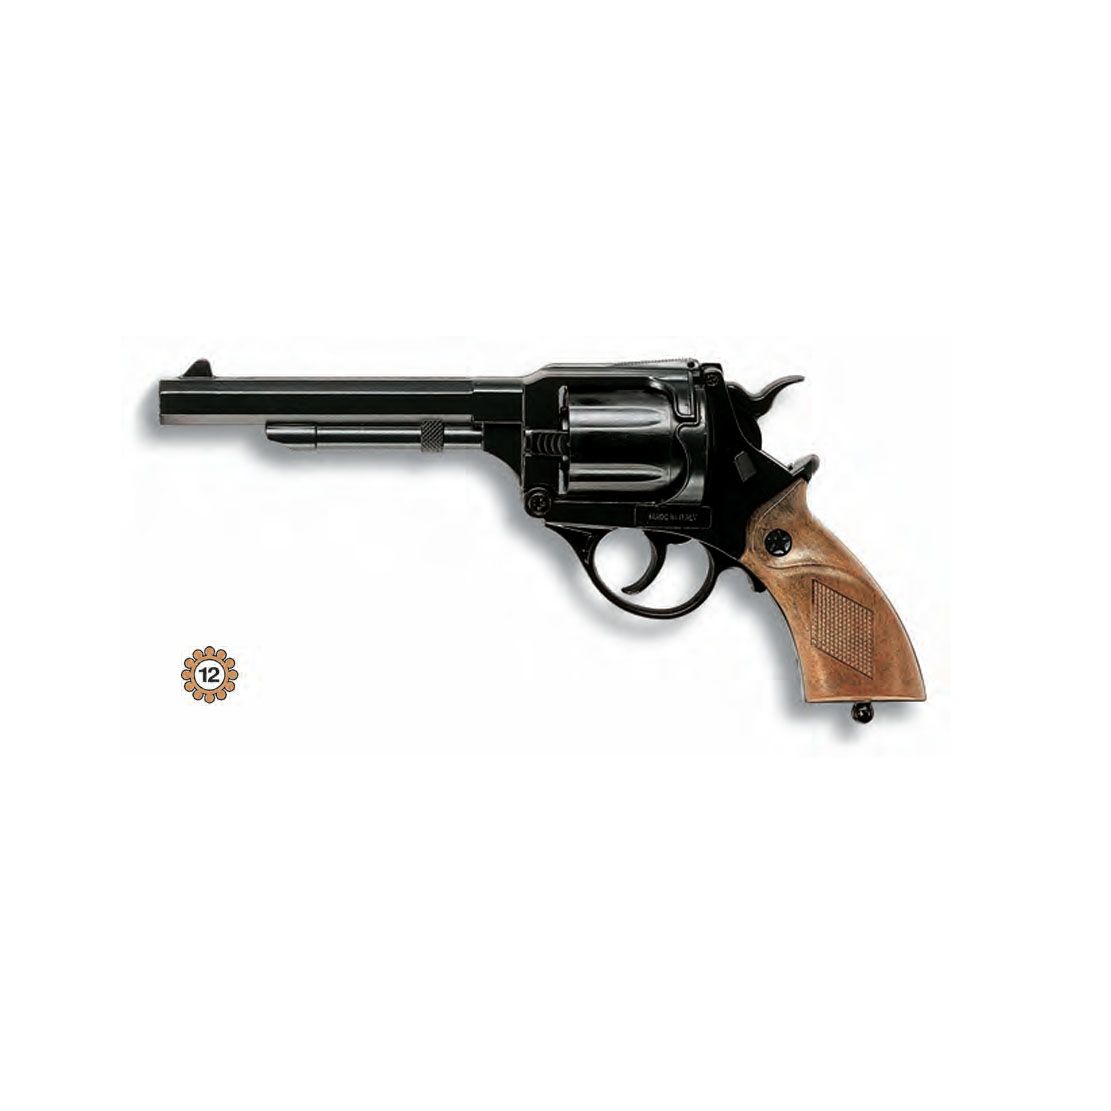 Edison Giocattoli, Детски метален пистолет с капси HELENA